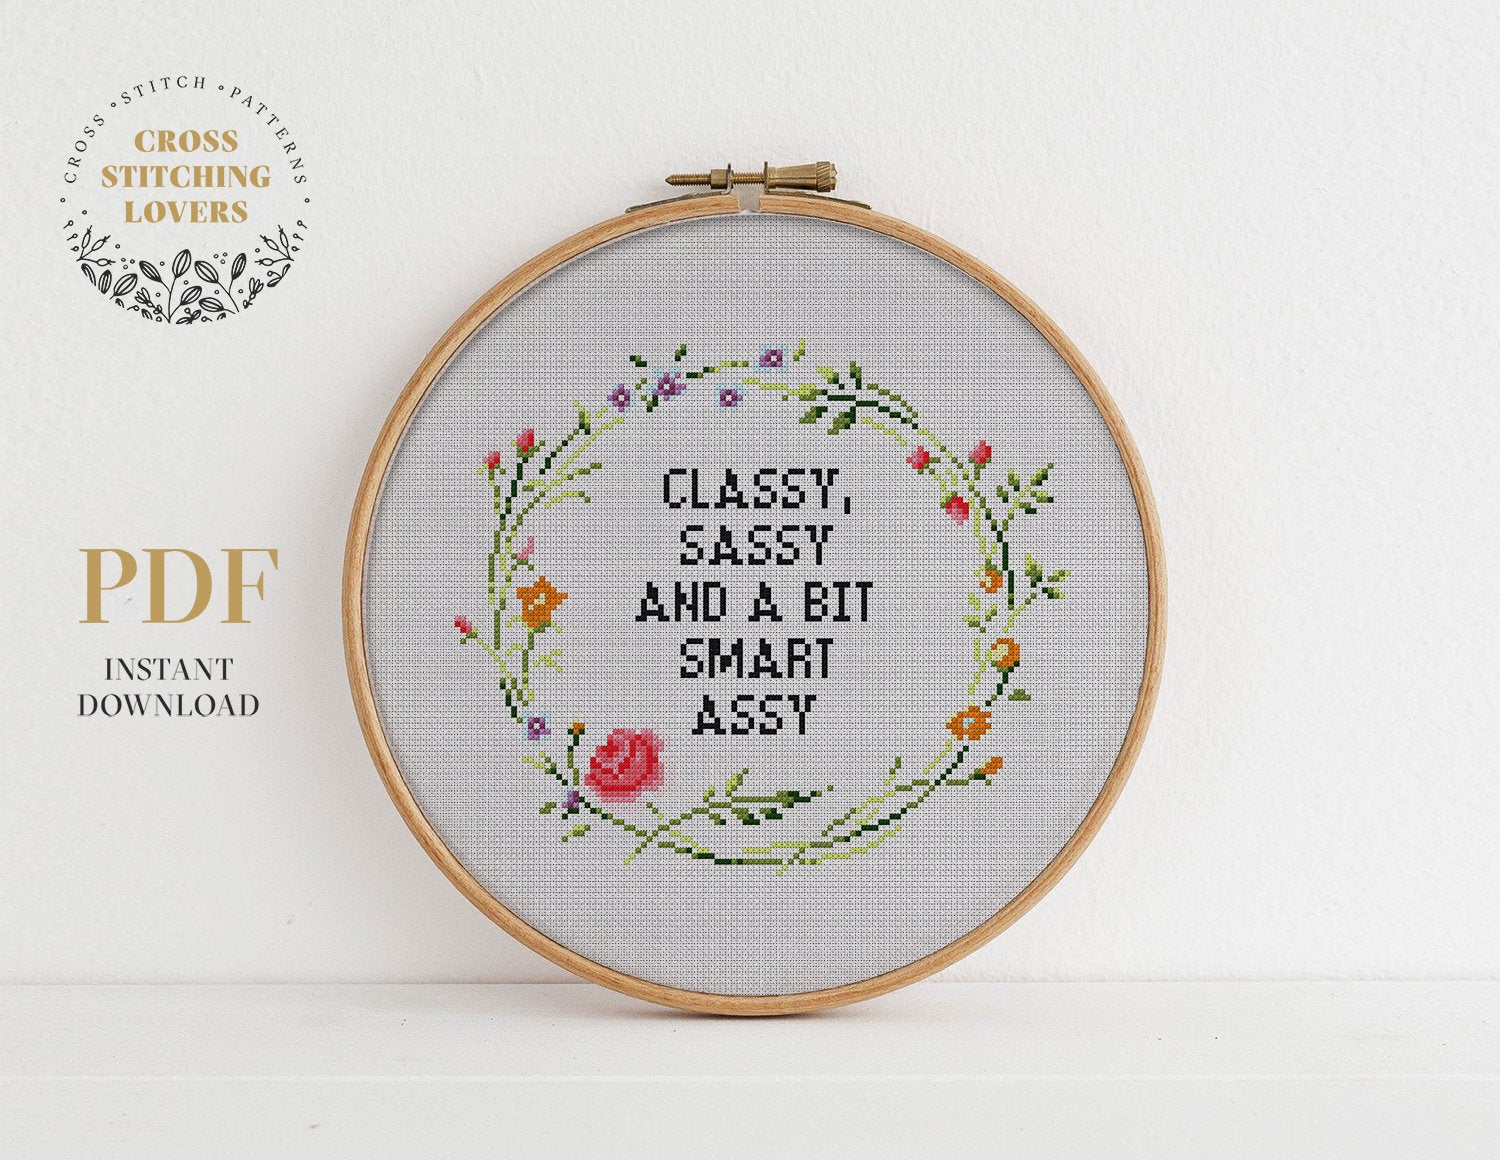 Classy, Sassy and a bit Smart Assy - Cross stitch pattern